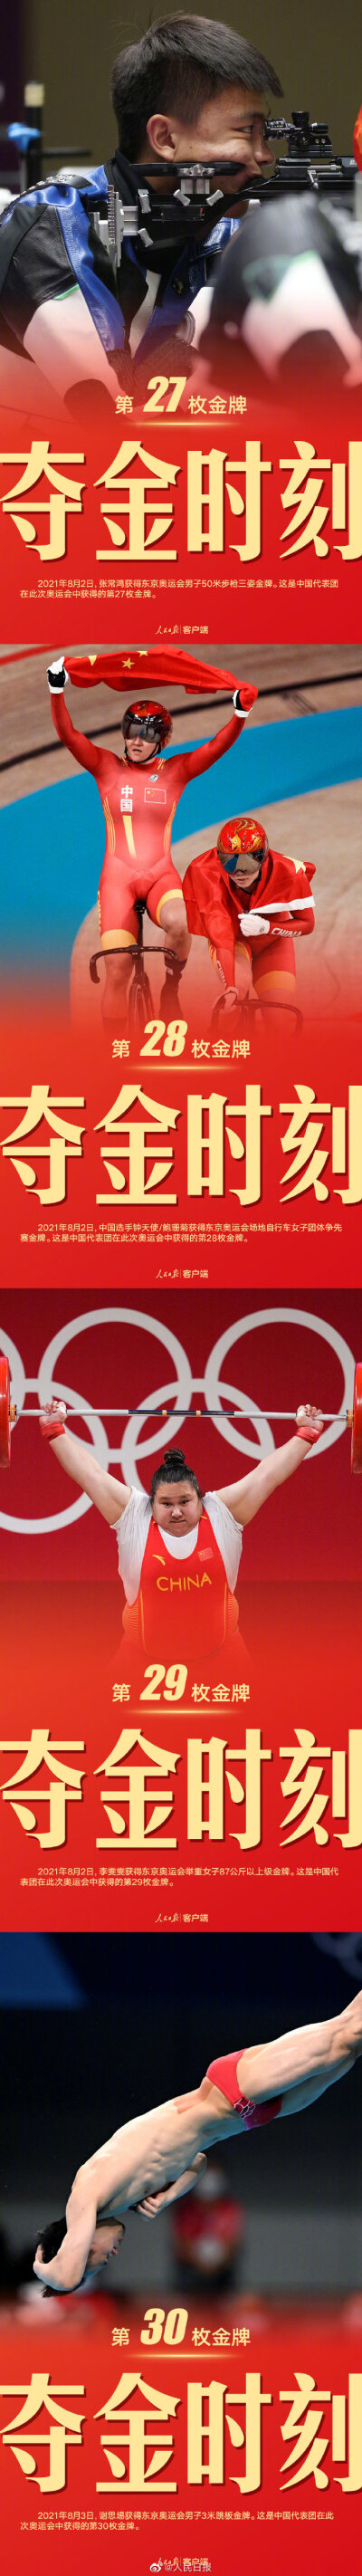 #中国军团东京奥运38金全记录#